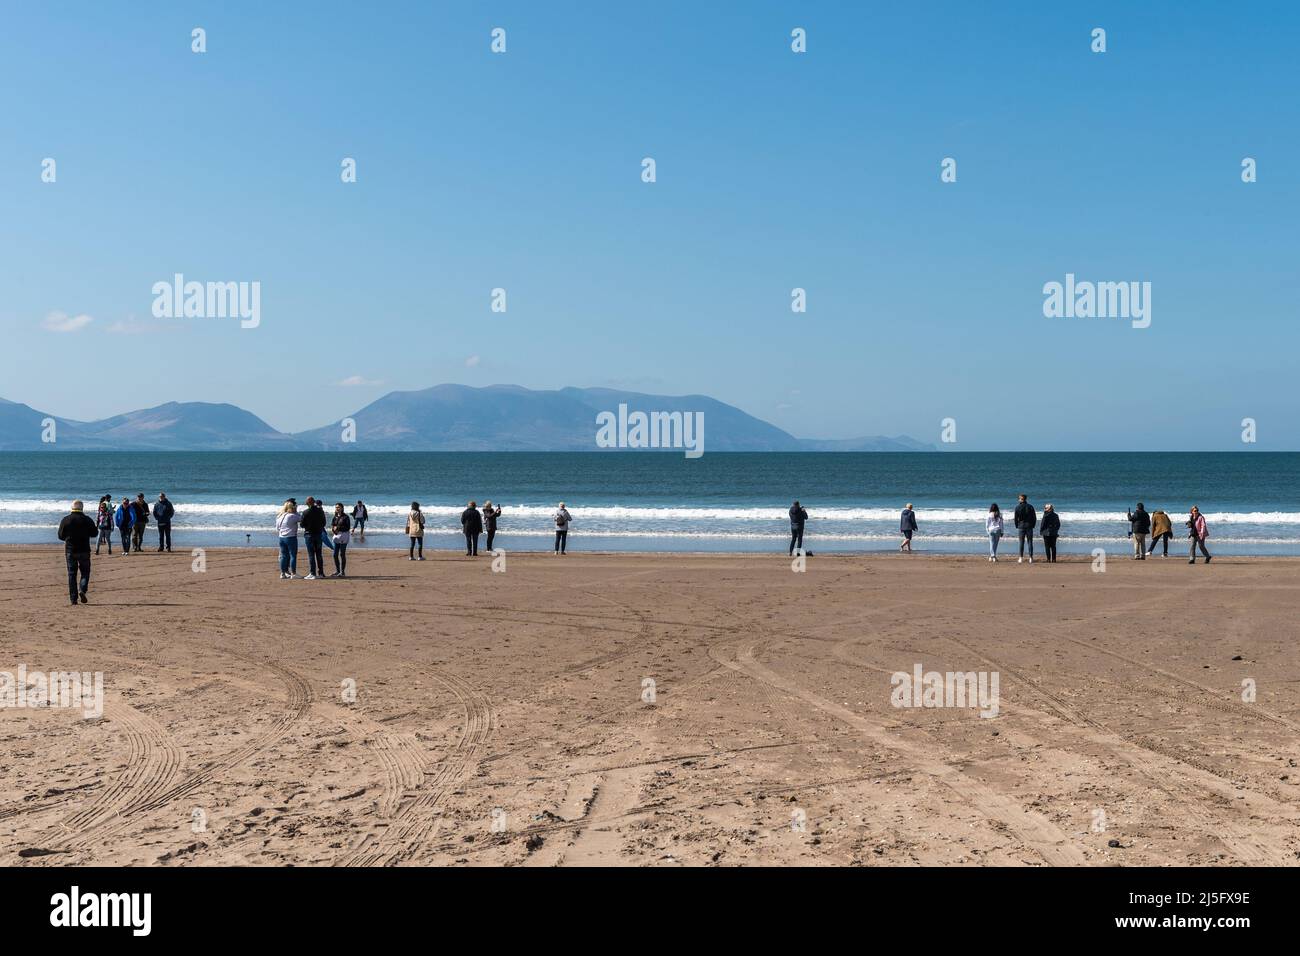 Inch Beach, County Kerry, Irland. 23. April 2022. Die Sonne schien heute auf Inch Beach, County Kerry. Trotz der Sonne und der warmen Temperaturen war der Strand relativ ruhig, aber es wurde immer geschäftiger. Quelle: AG News/Alamy Live News Stockfoto